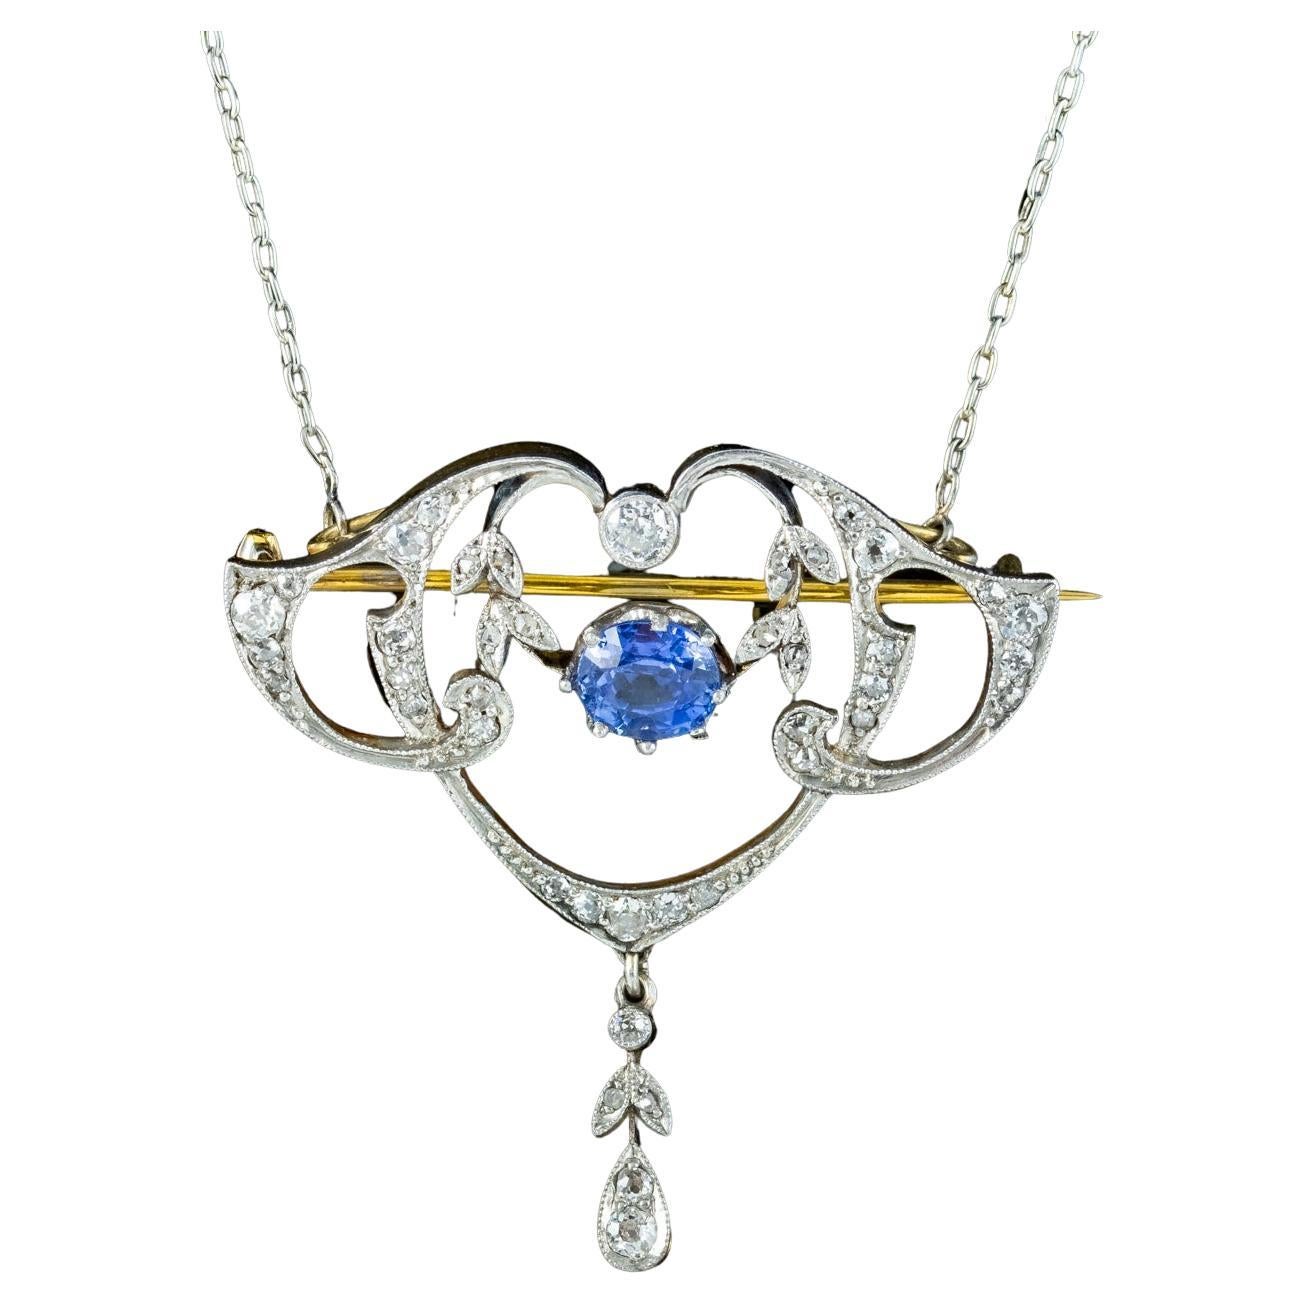 Antique Edwardian Ceylon Sapphire Diamond Lavaliere Pendant Necklace With Cert For Sale